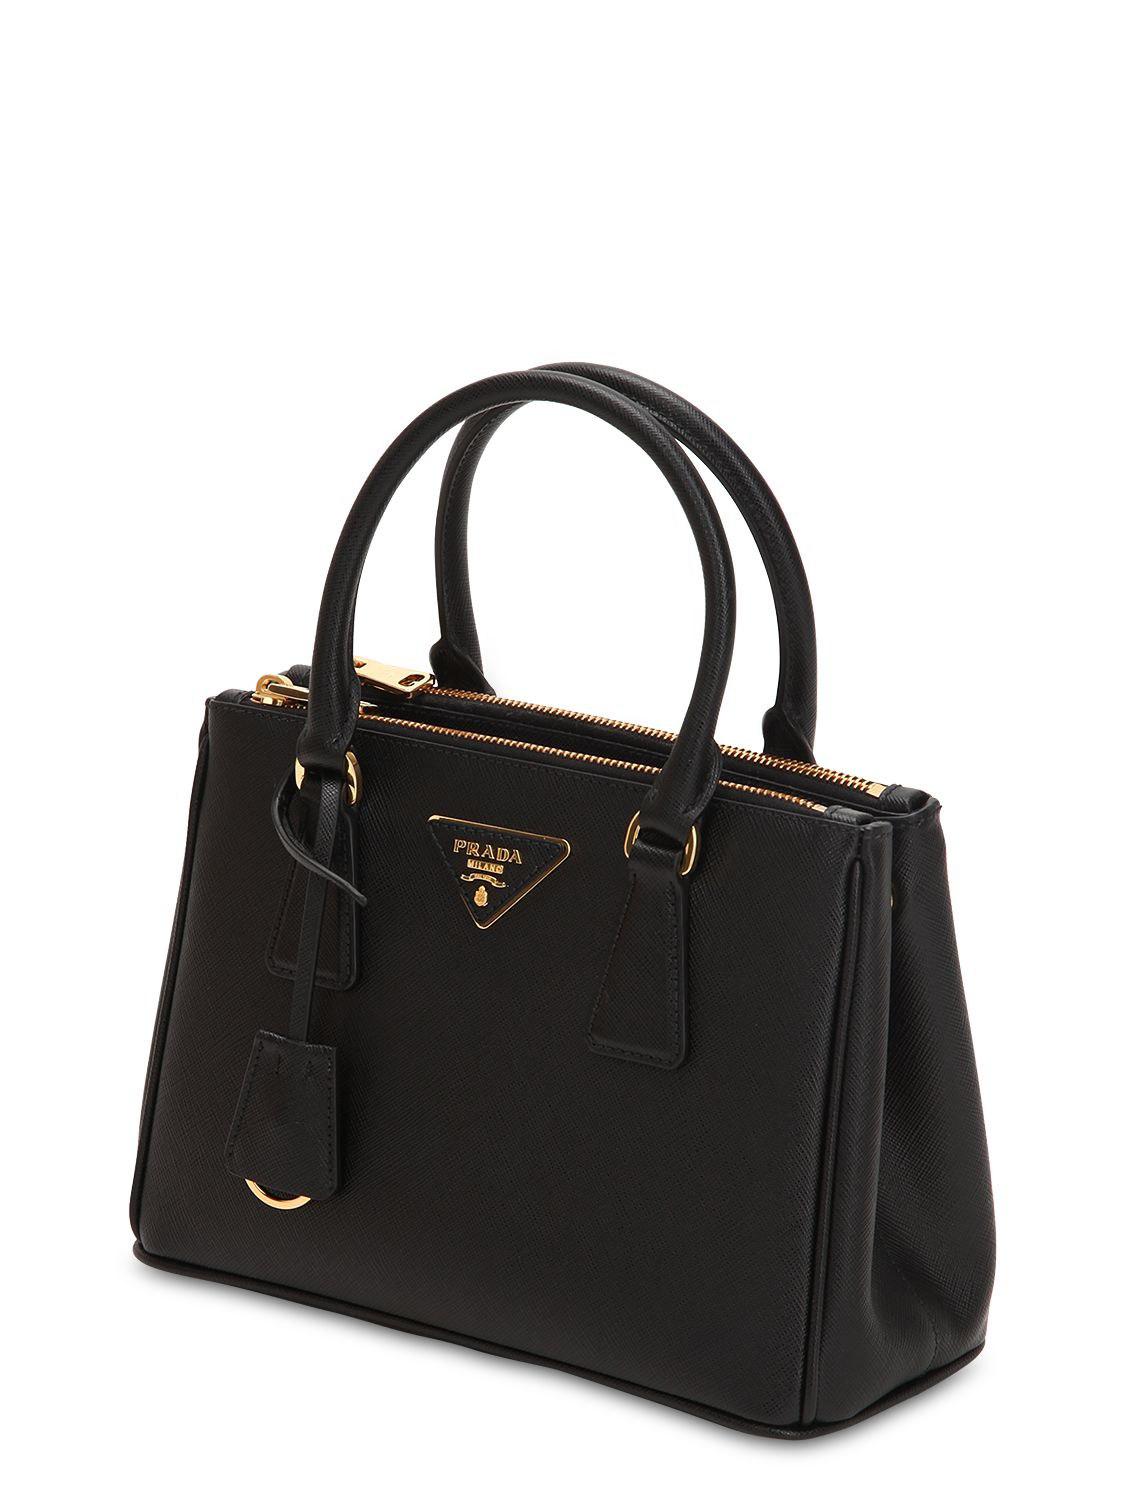 Prada Leather Galleria Tote Bag Medium Nero in Black | Lyst